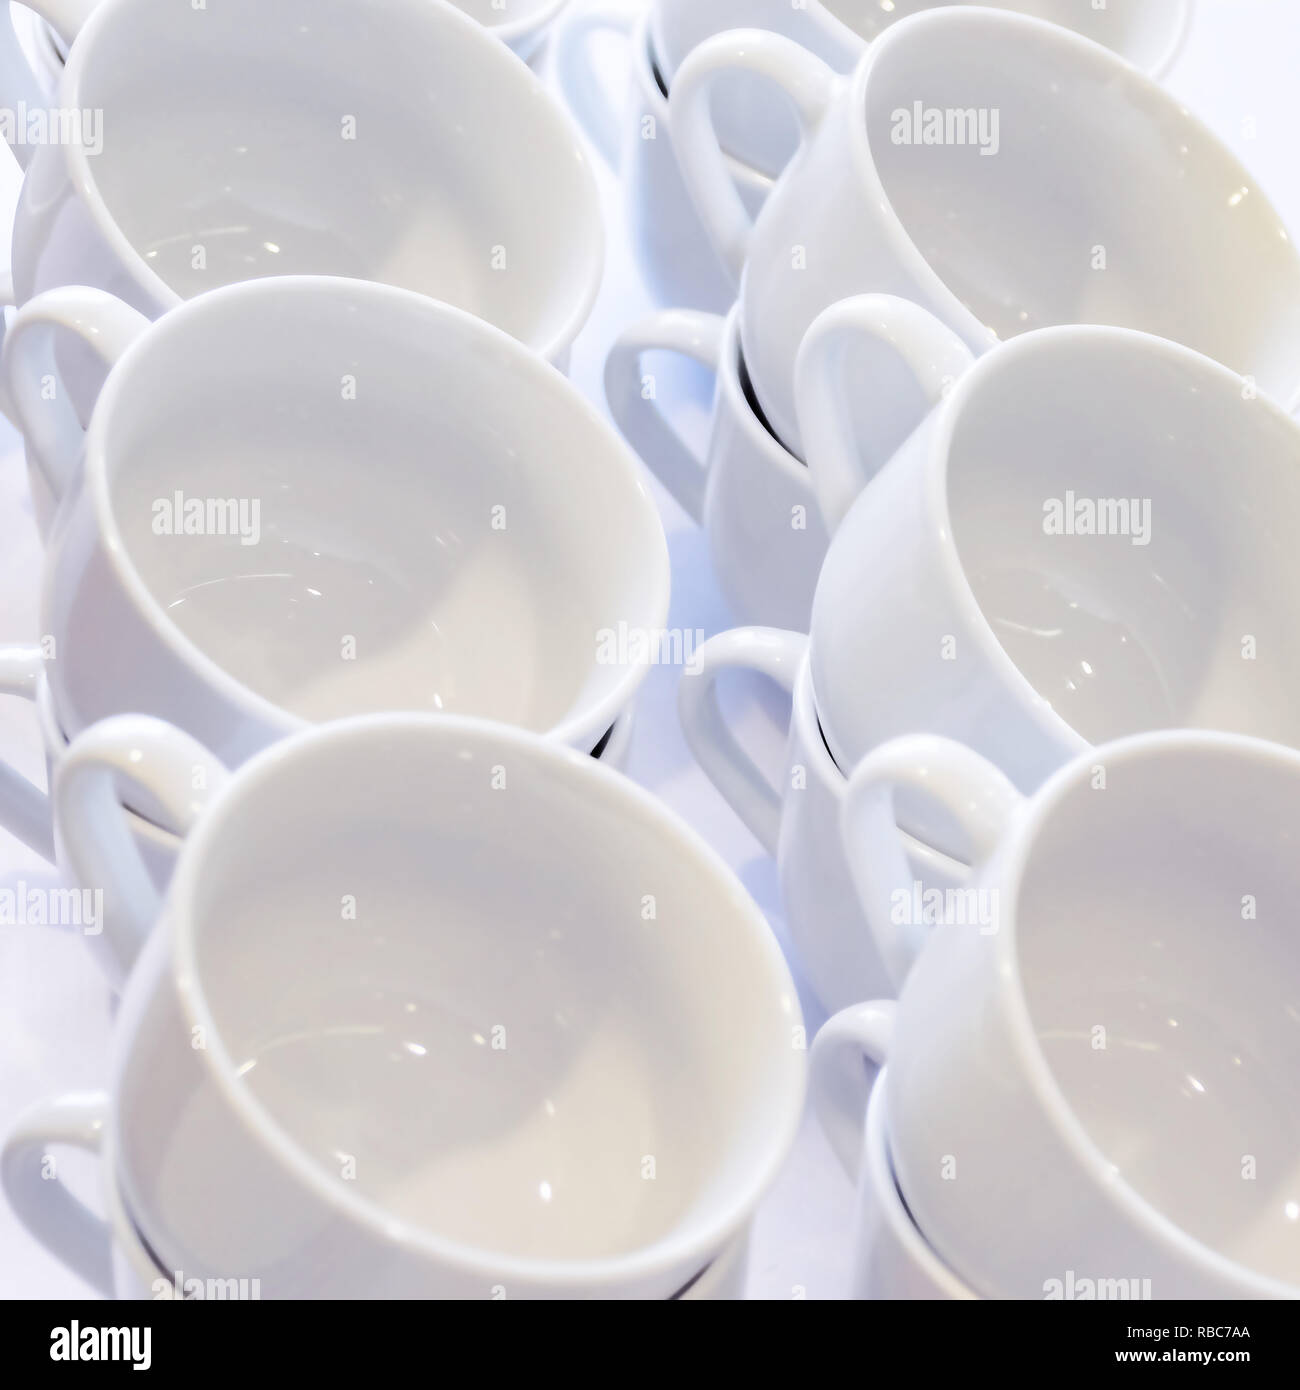 Leere weiße Tassen gestapelt auf dem Tisch. Tee oder Kaffee Catering Services im Hotel, Event, Konferenz, Tagung oder Hochzeit. Ansicht von oben. Stockfoto